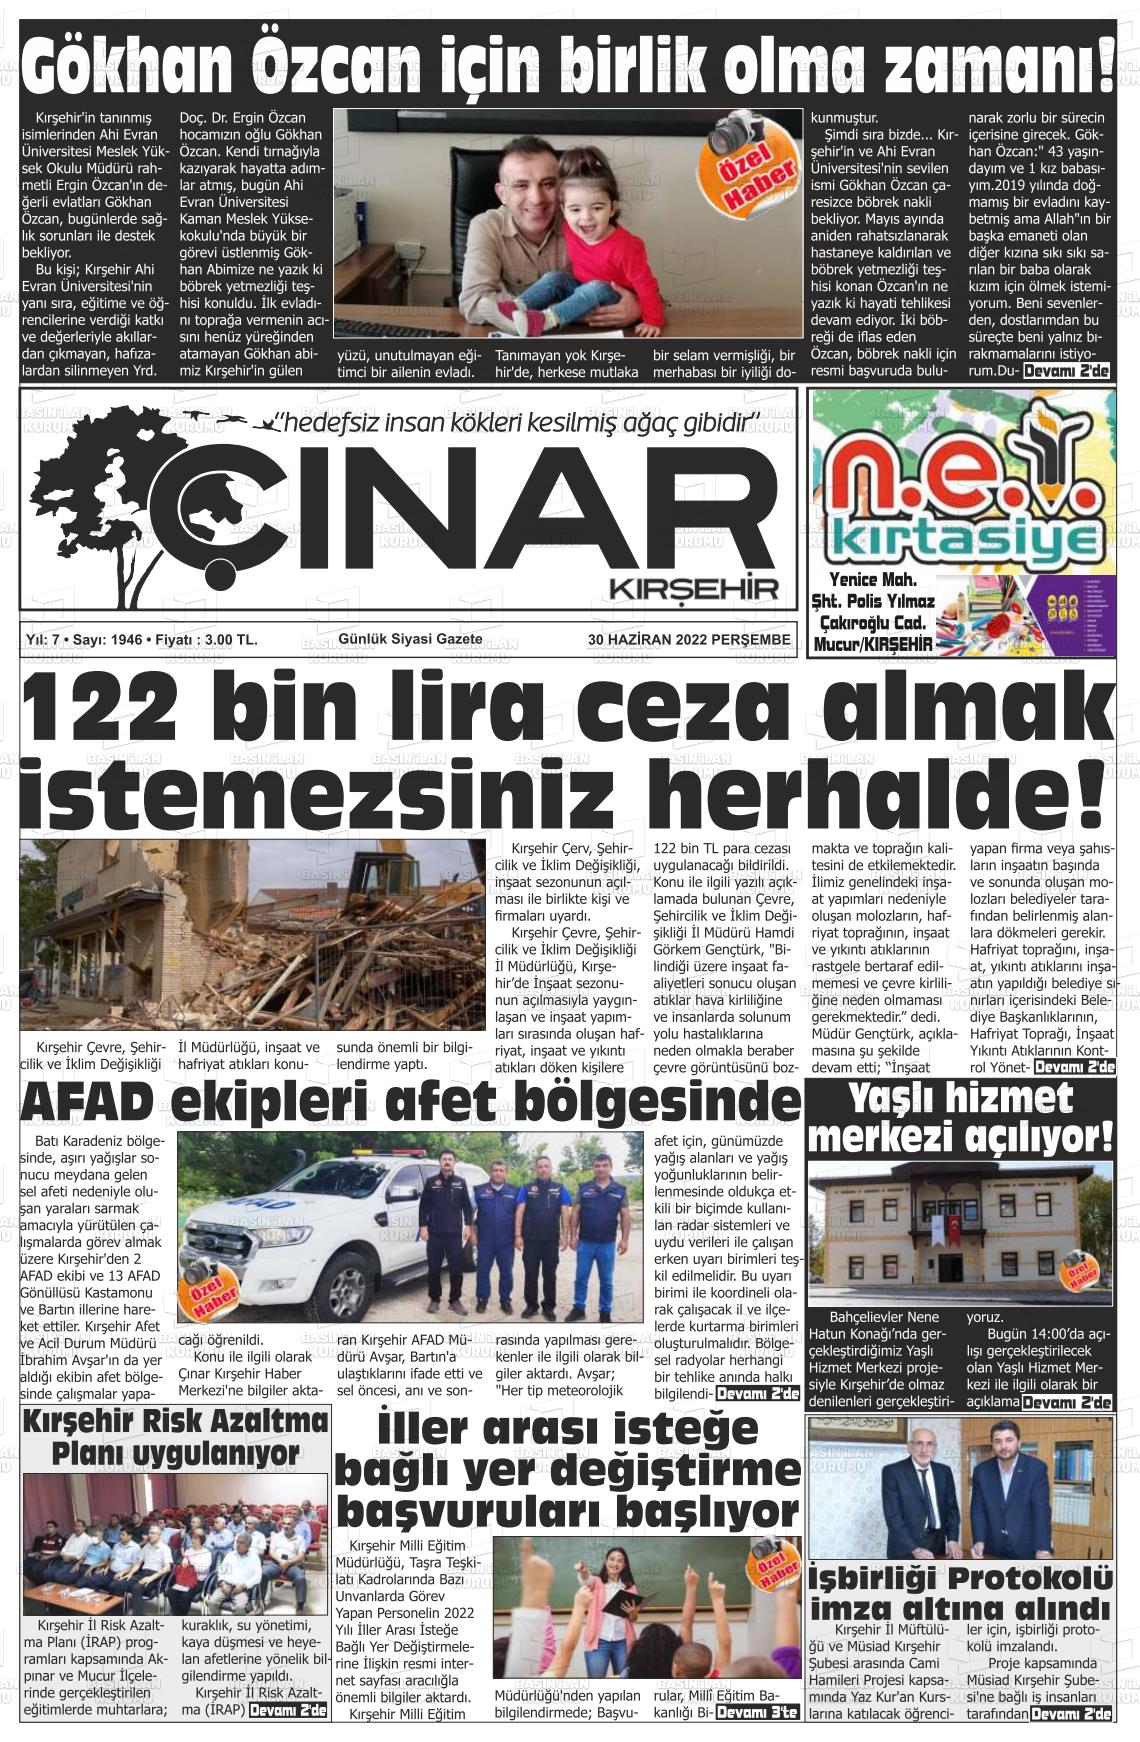 02 Temmuz 2022 Kırşehir Çınar Gazete Manşeti